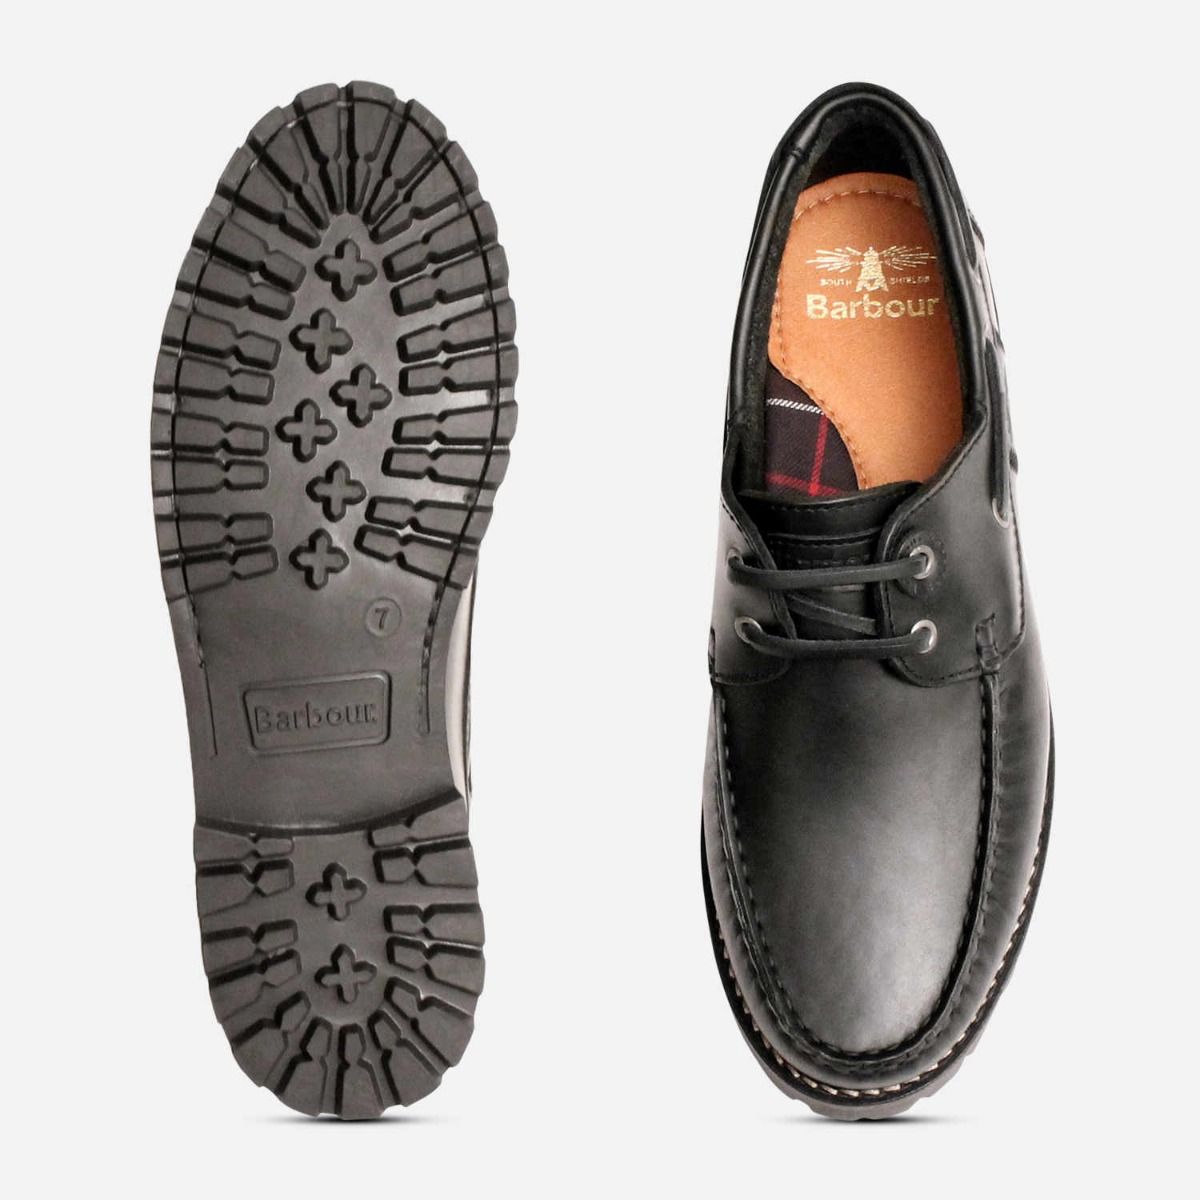 barbour black shoes